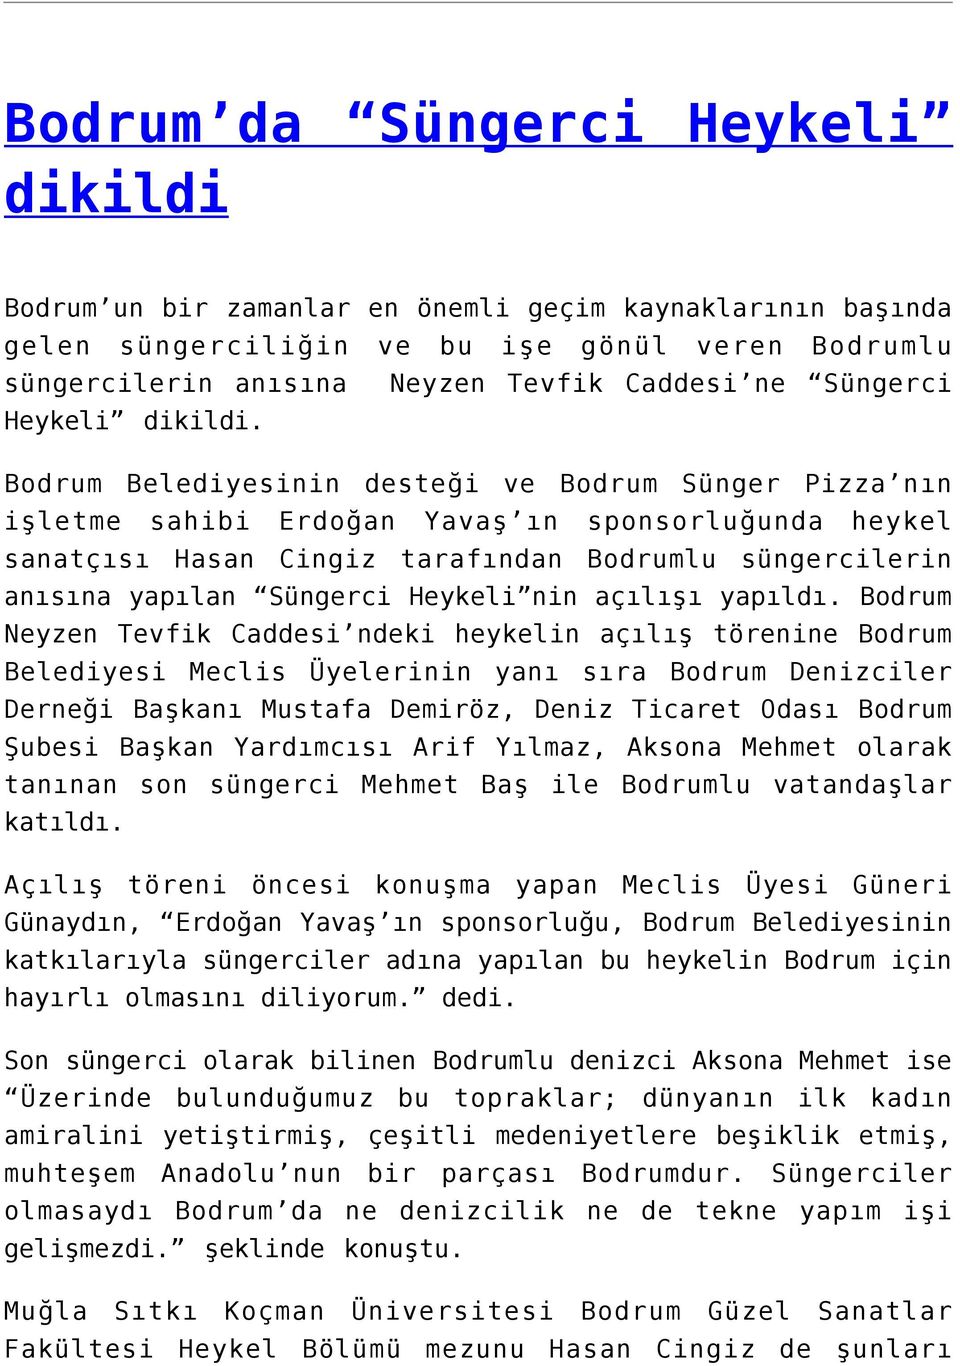 Bodrum Belediyesinin desteği ve Bodrum Sünger Pizza nın işletme sahibi Erdoğan Yavaş ın sponsorluğunda heykel sanatçısı Hasan Cingiz tarafından Bodrumlu süngercilerin anısına yapılan Süngerci Heykeli